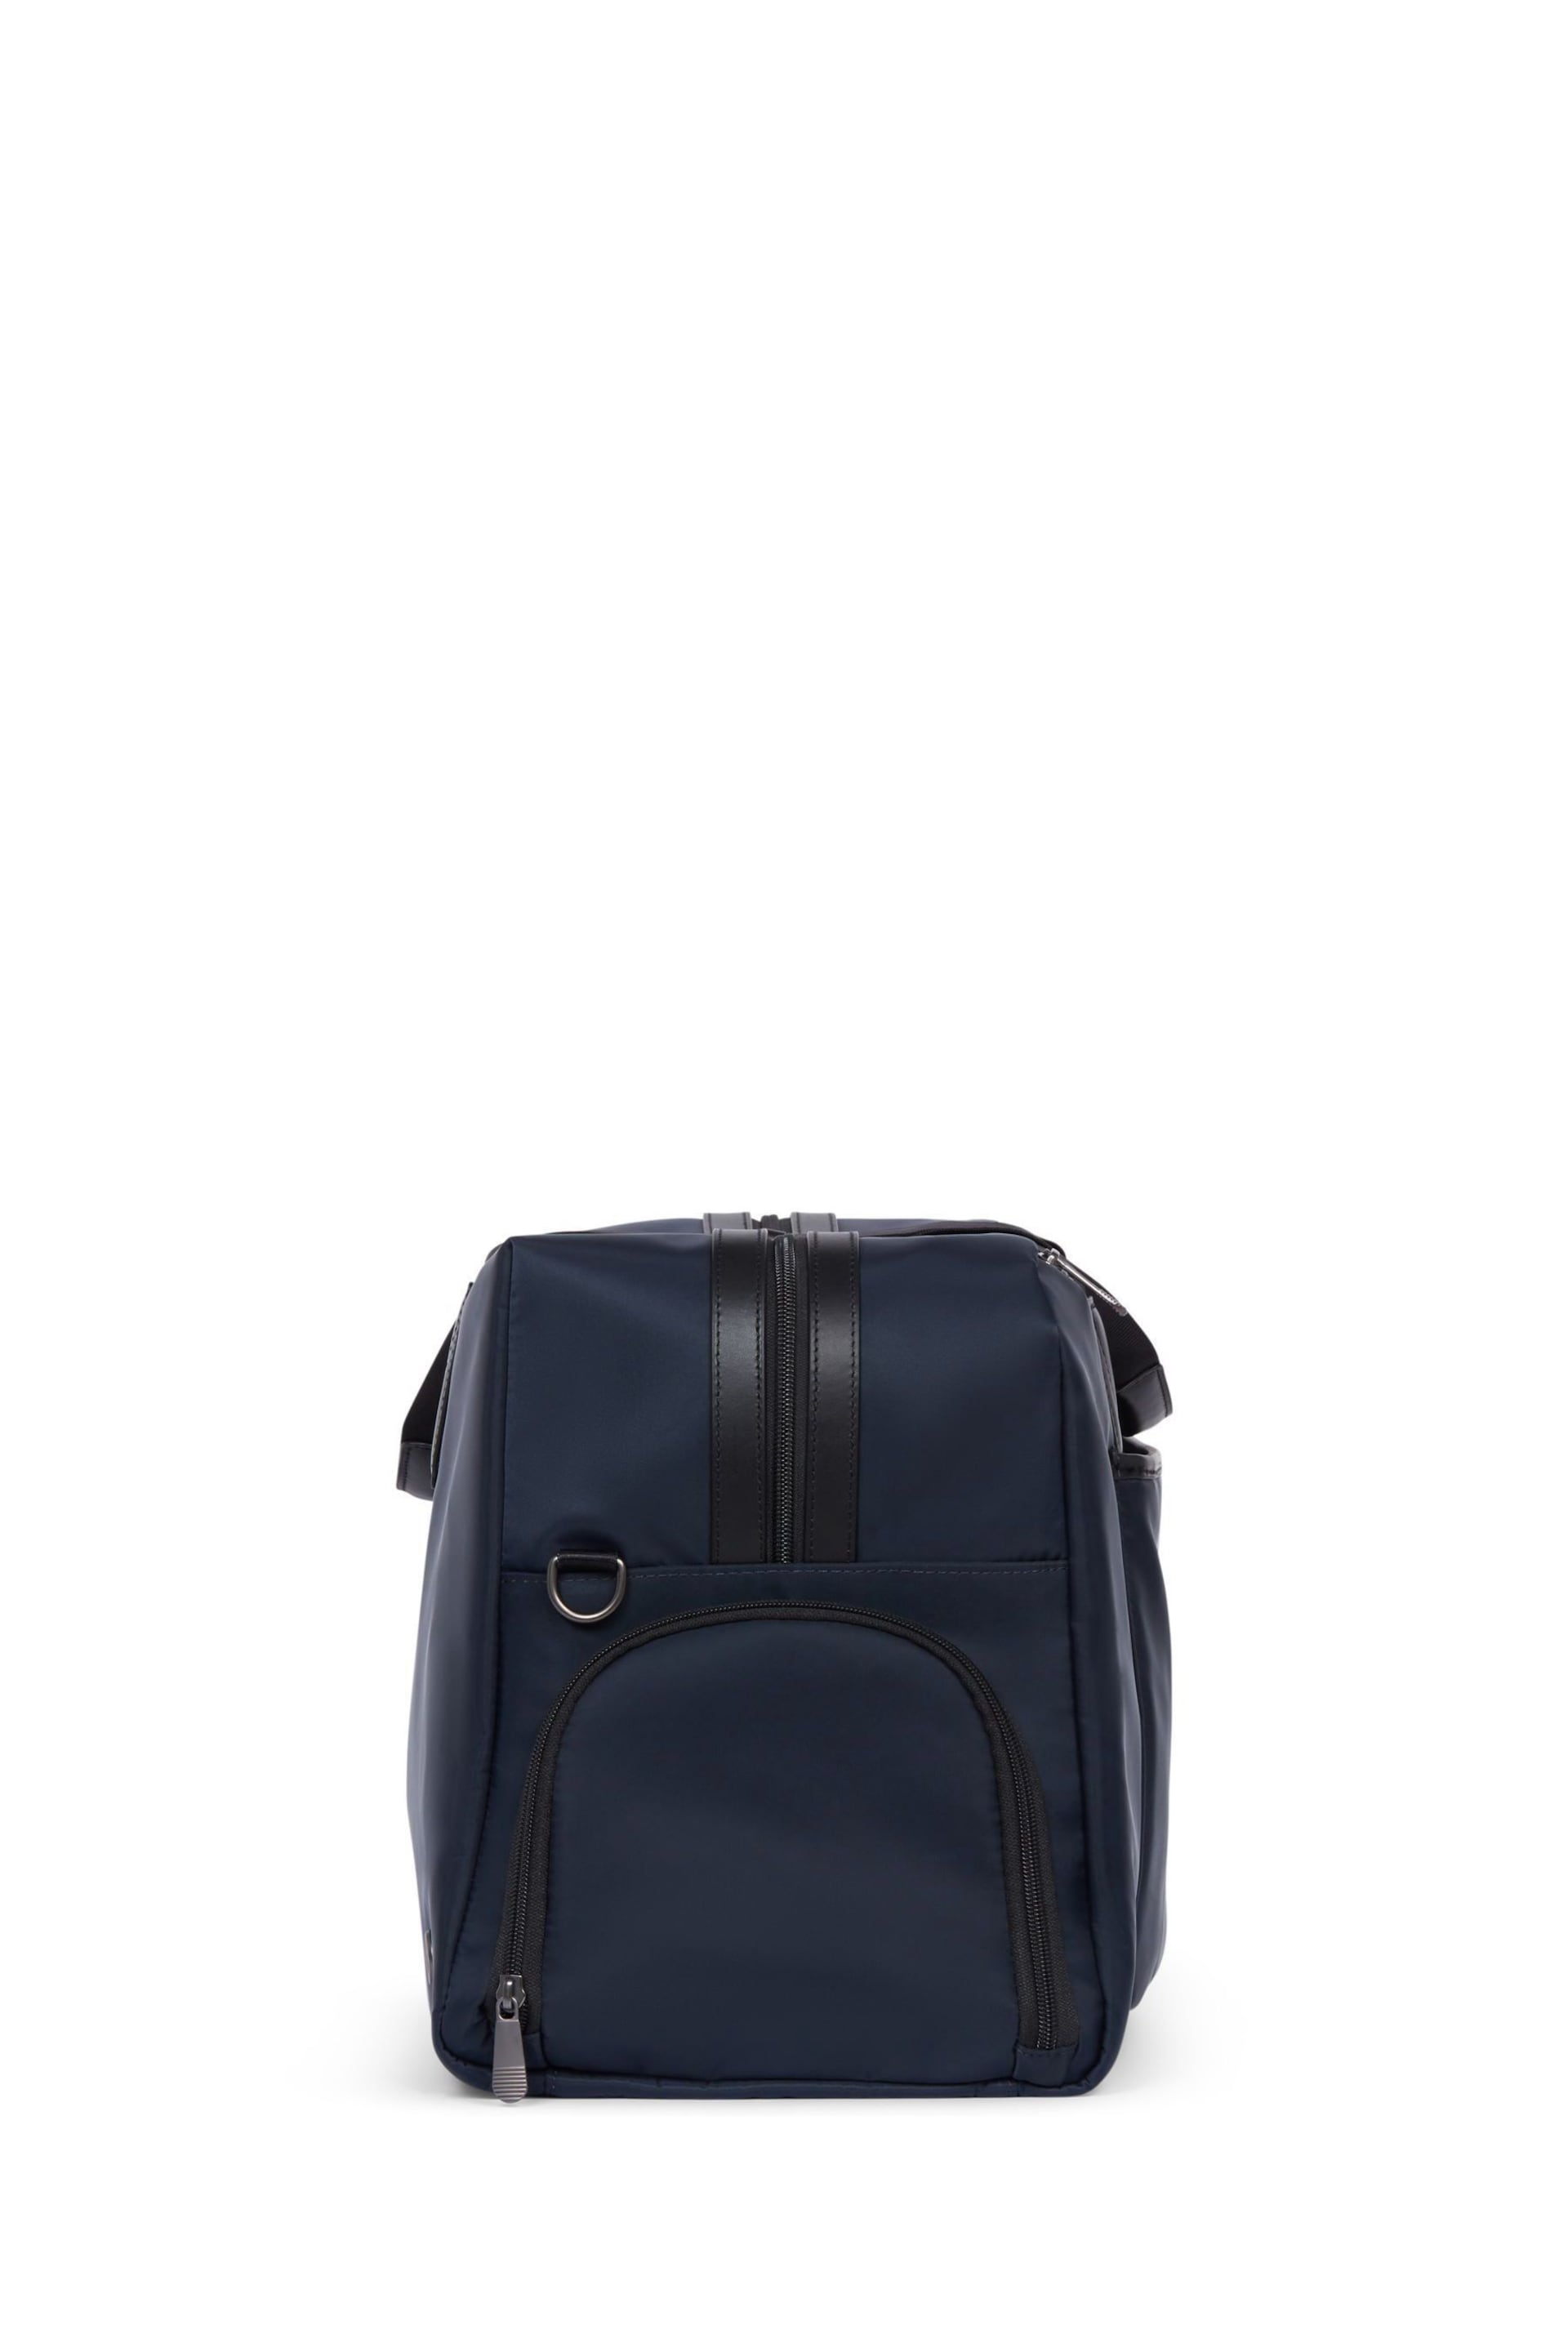 Antler Blue Chelsea Weekender Suitcase - Image 2 of 2